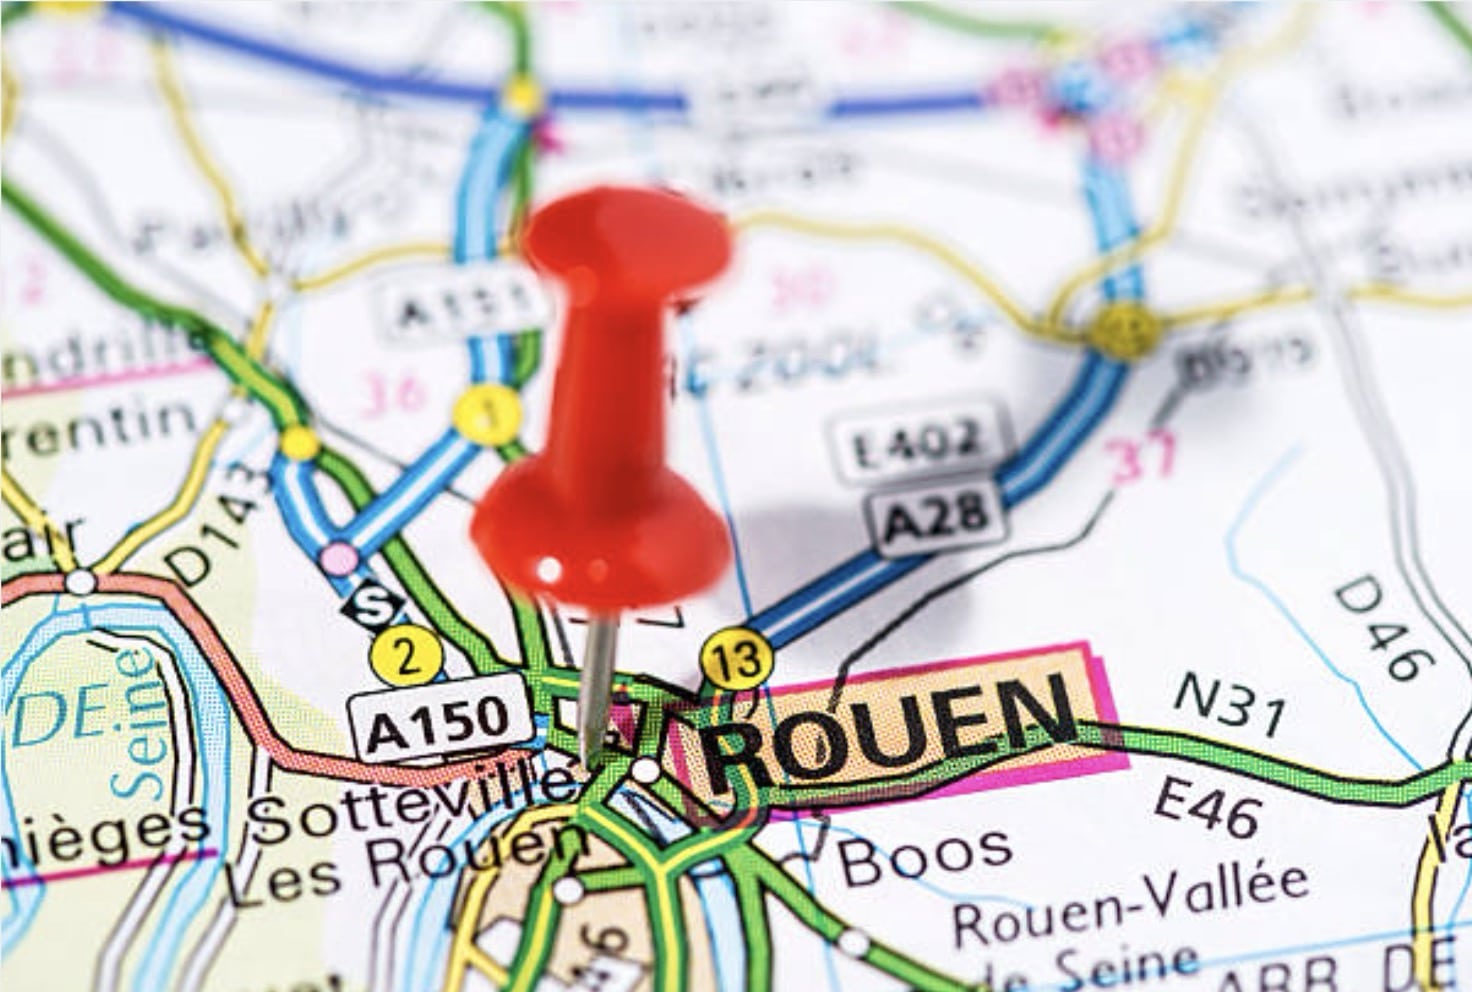 Déménageur Rouen: Trouvez votre déménageur idéal